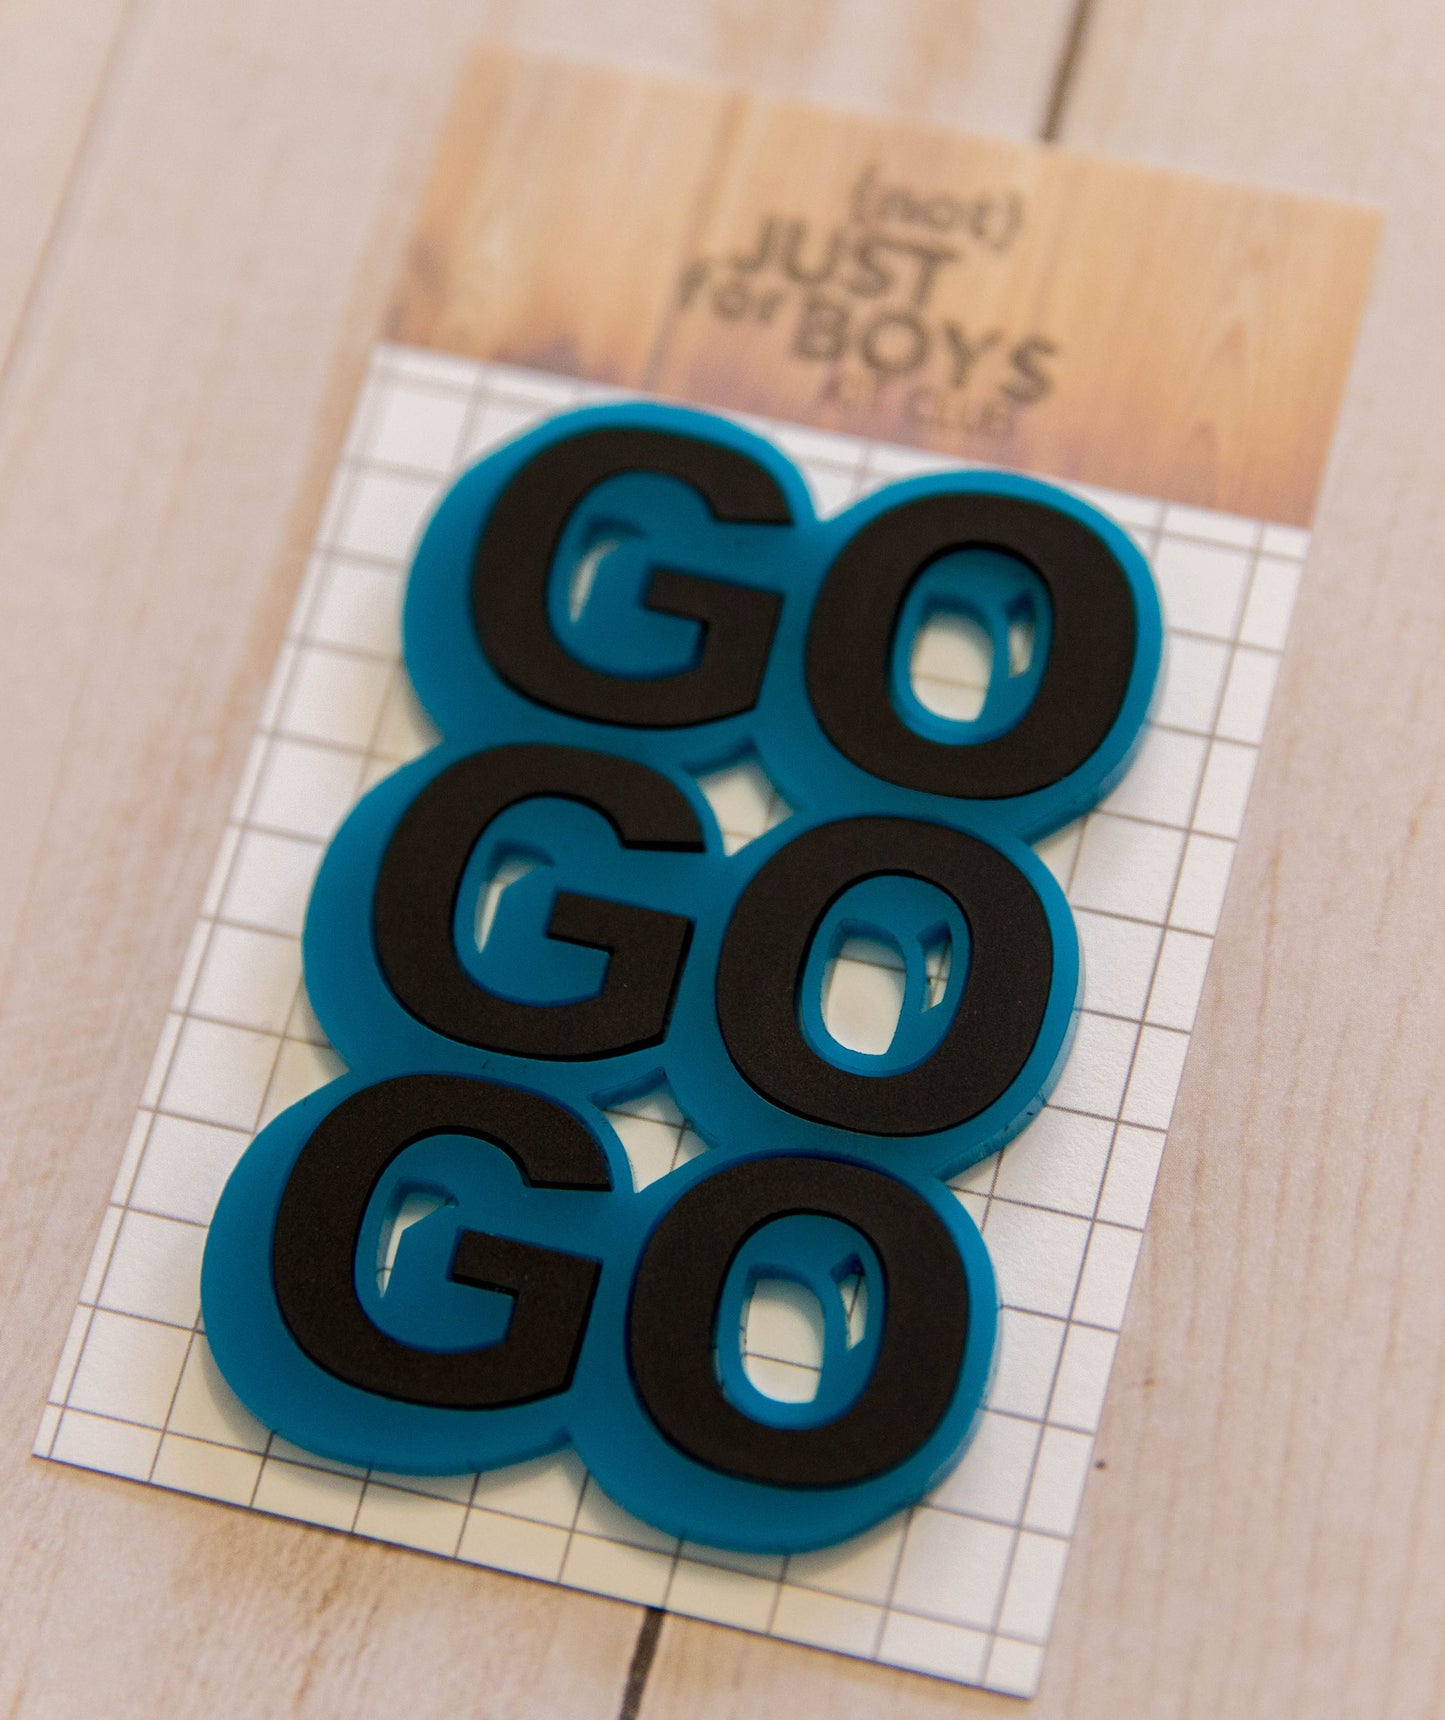 "Go Go Go" Acrylic Embellishment